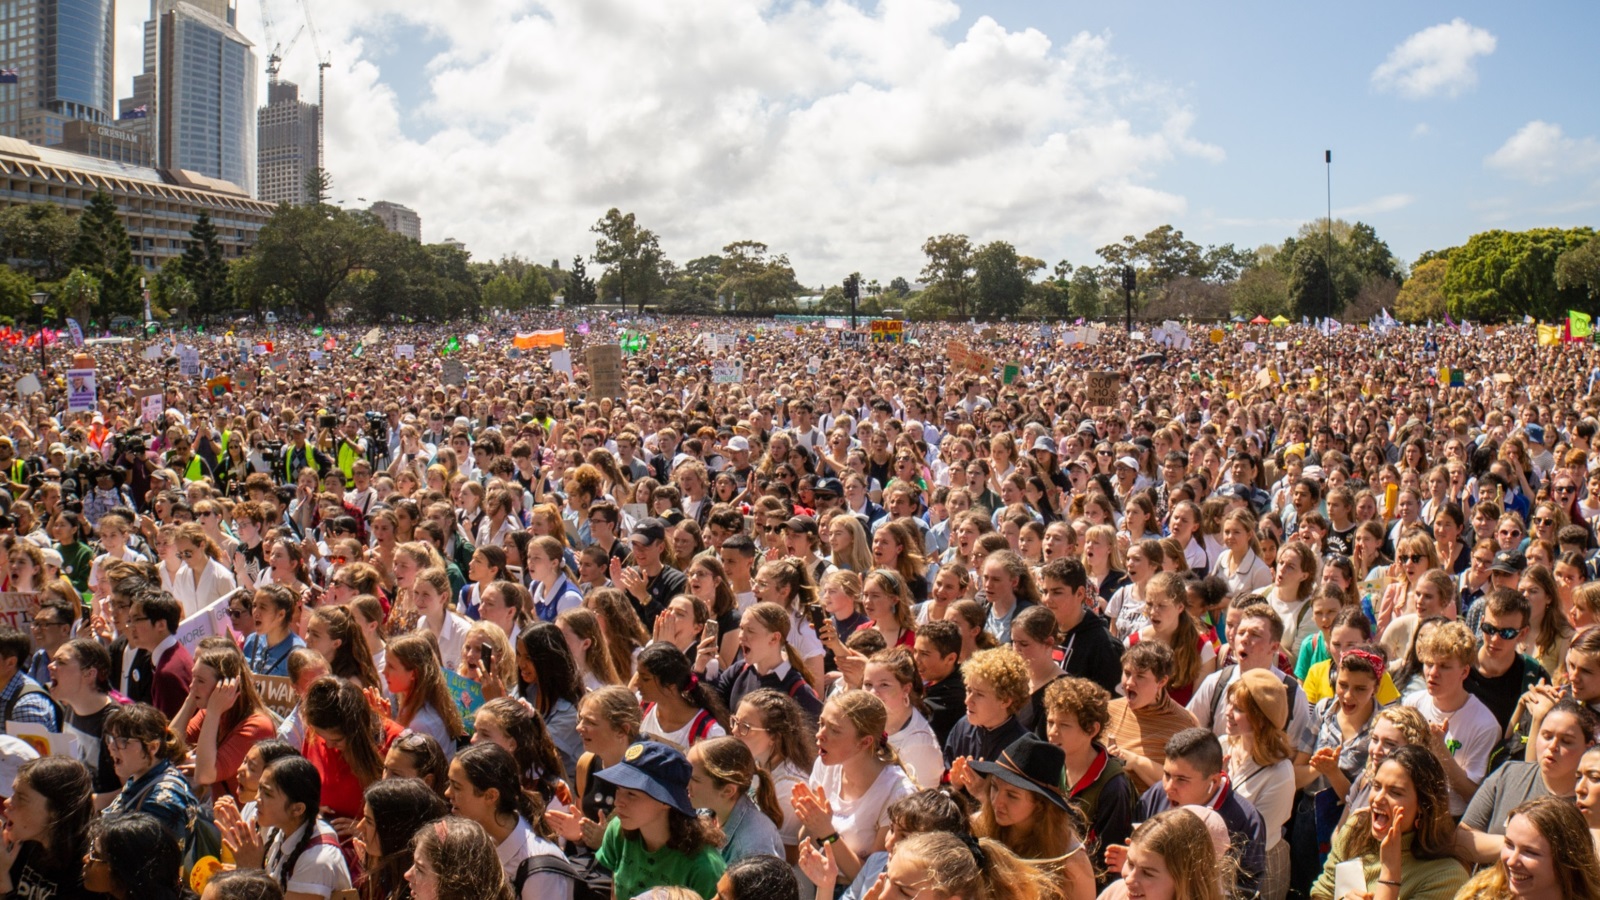 ‪مشاركة الطلاب والشباب في إضرابات المناخ في أستراليا 20 سبتمبر/أيلول 2019 (ويكيبيديا)‬ مشاركة الطلاب والشباب في إضرابات المناخ في أستراليا 20 سبتمبر/أيلول 2019 (ويكيبيديا)